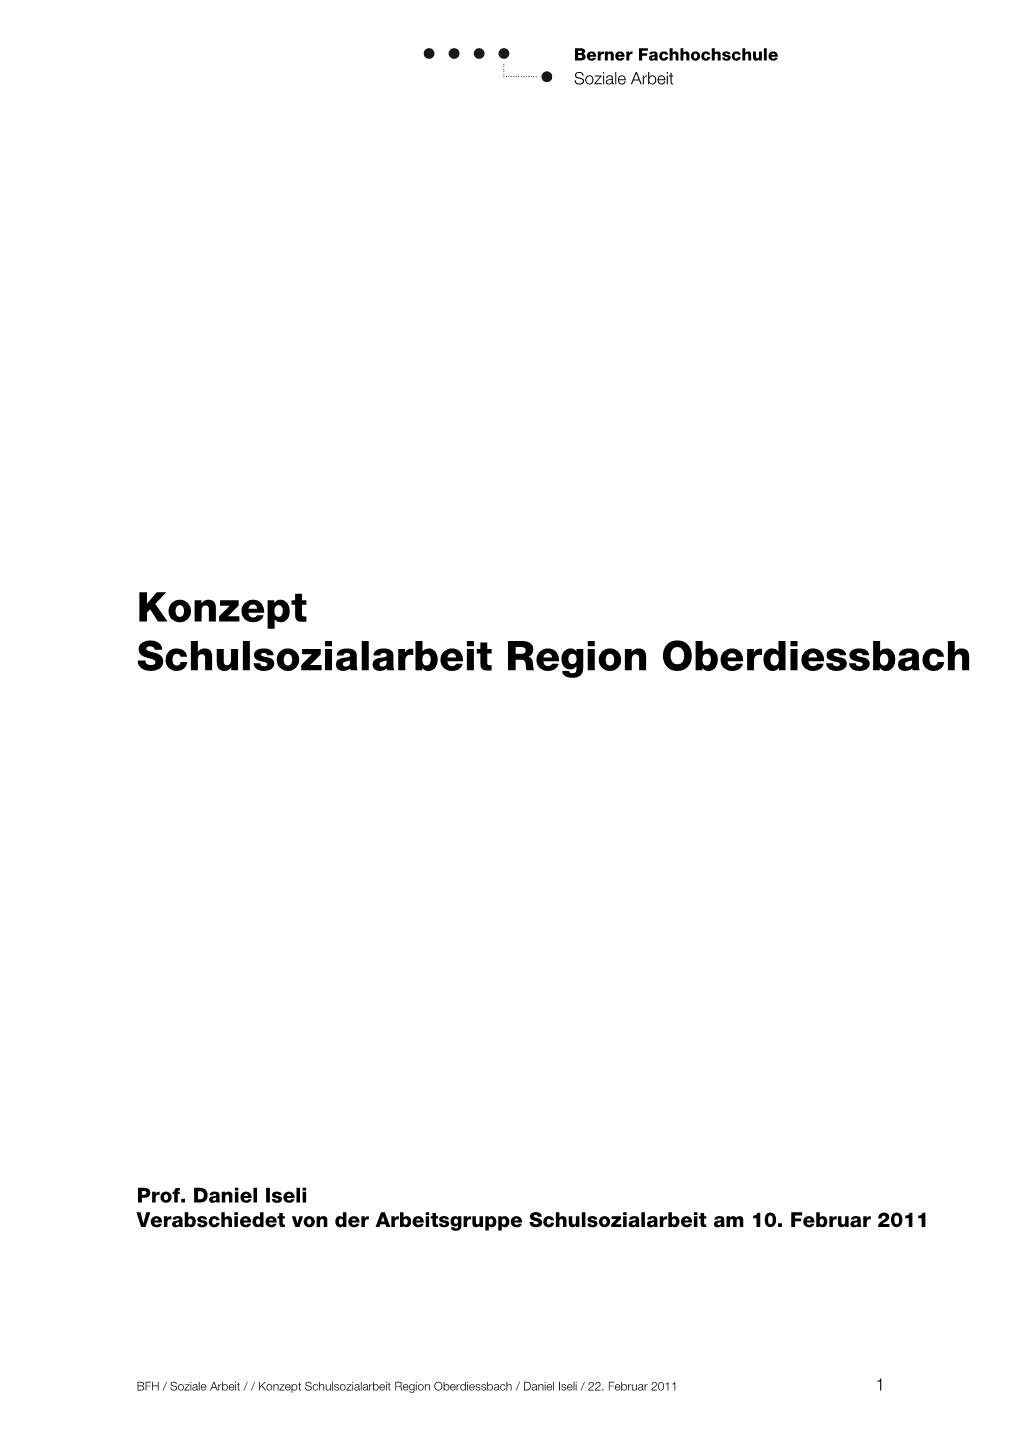 Konzept Schulsozialarbeit Region Oberdiessbach